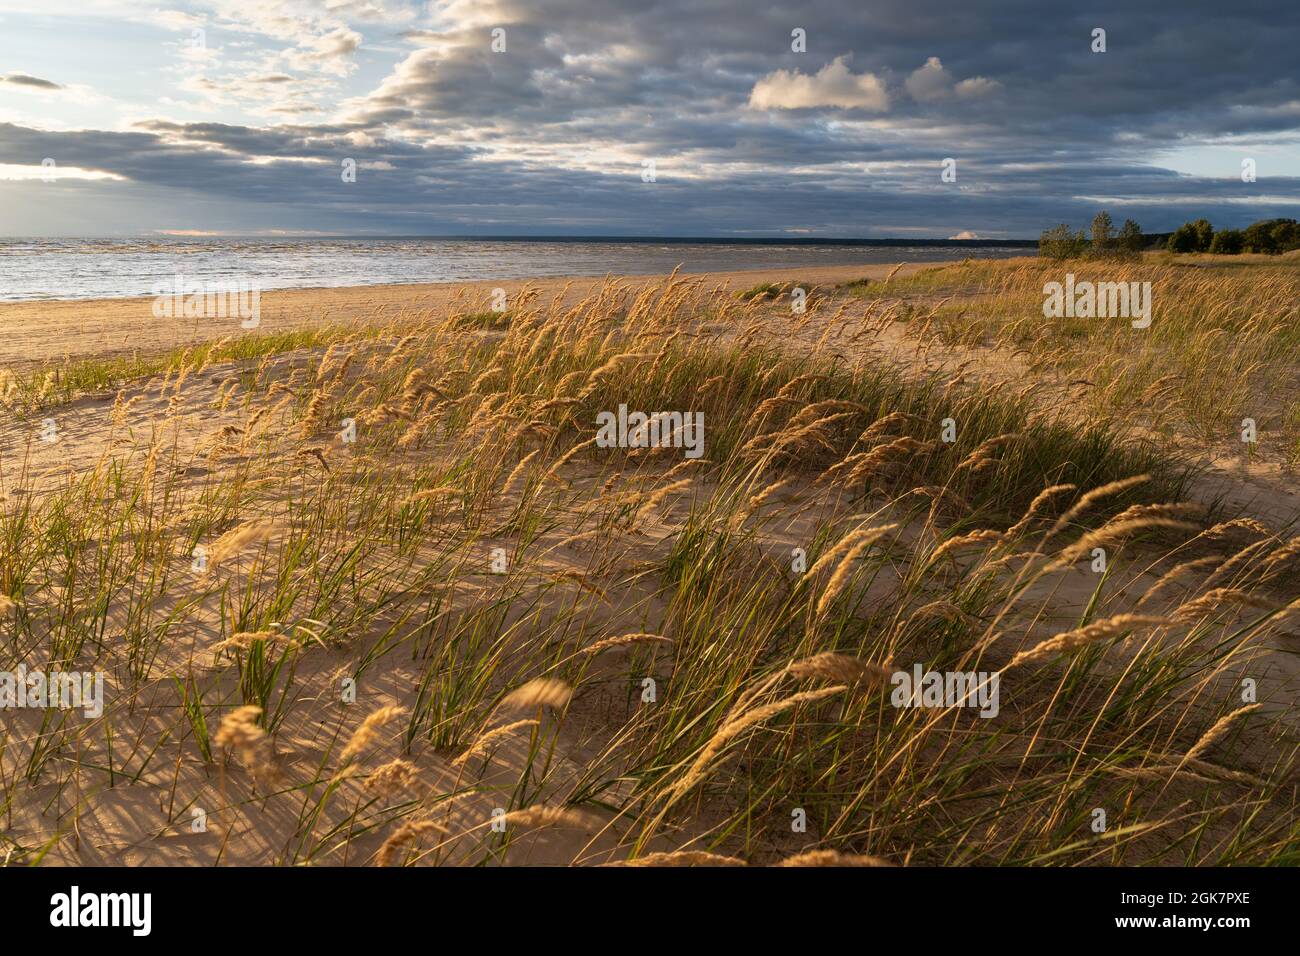 Strand trockenes Gras, Schilf, Stiele, die bei Sonnenuntergang am Strand auf den Wind wehen. Herbstsaison Stockfoto